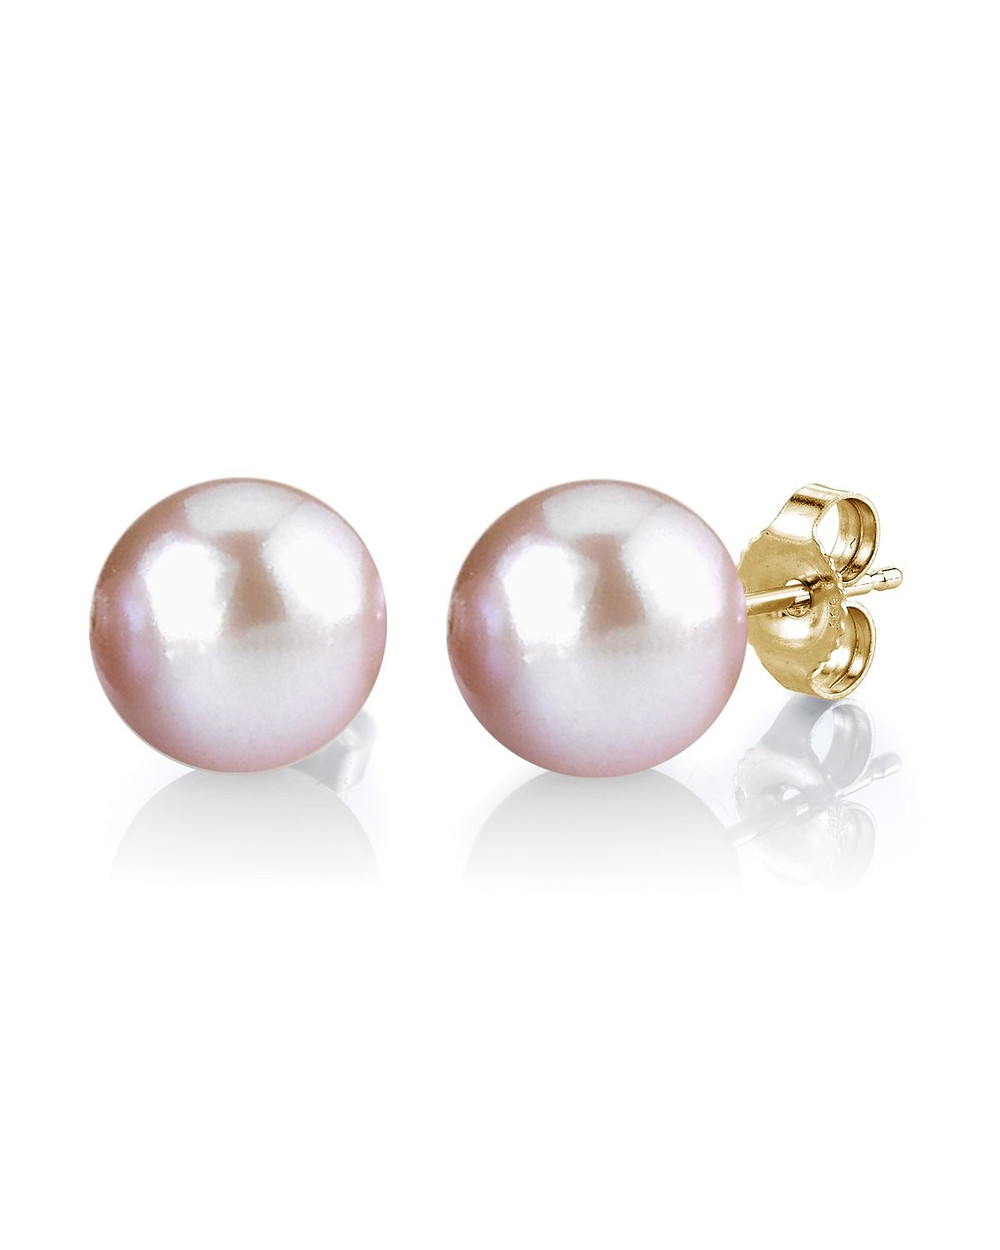 8mm Pearl Earrings
 8mm Pink Freshwater Pearl Stud Earrings